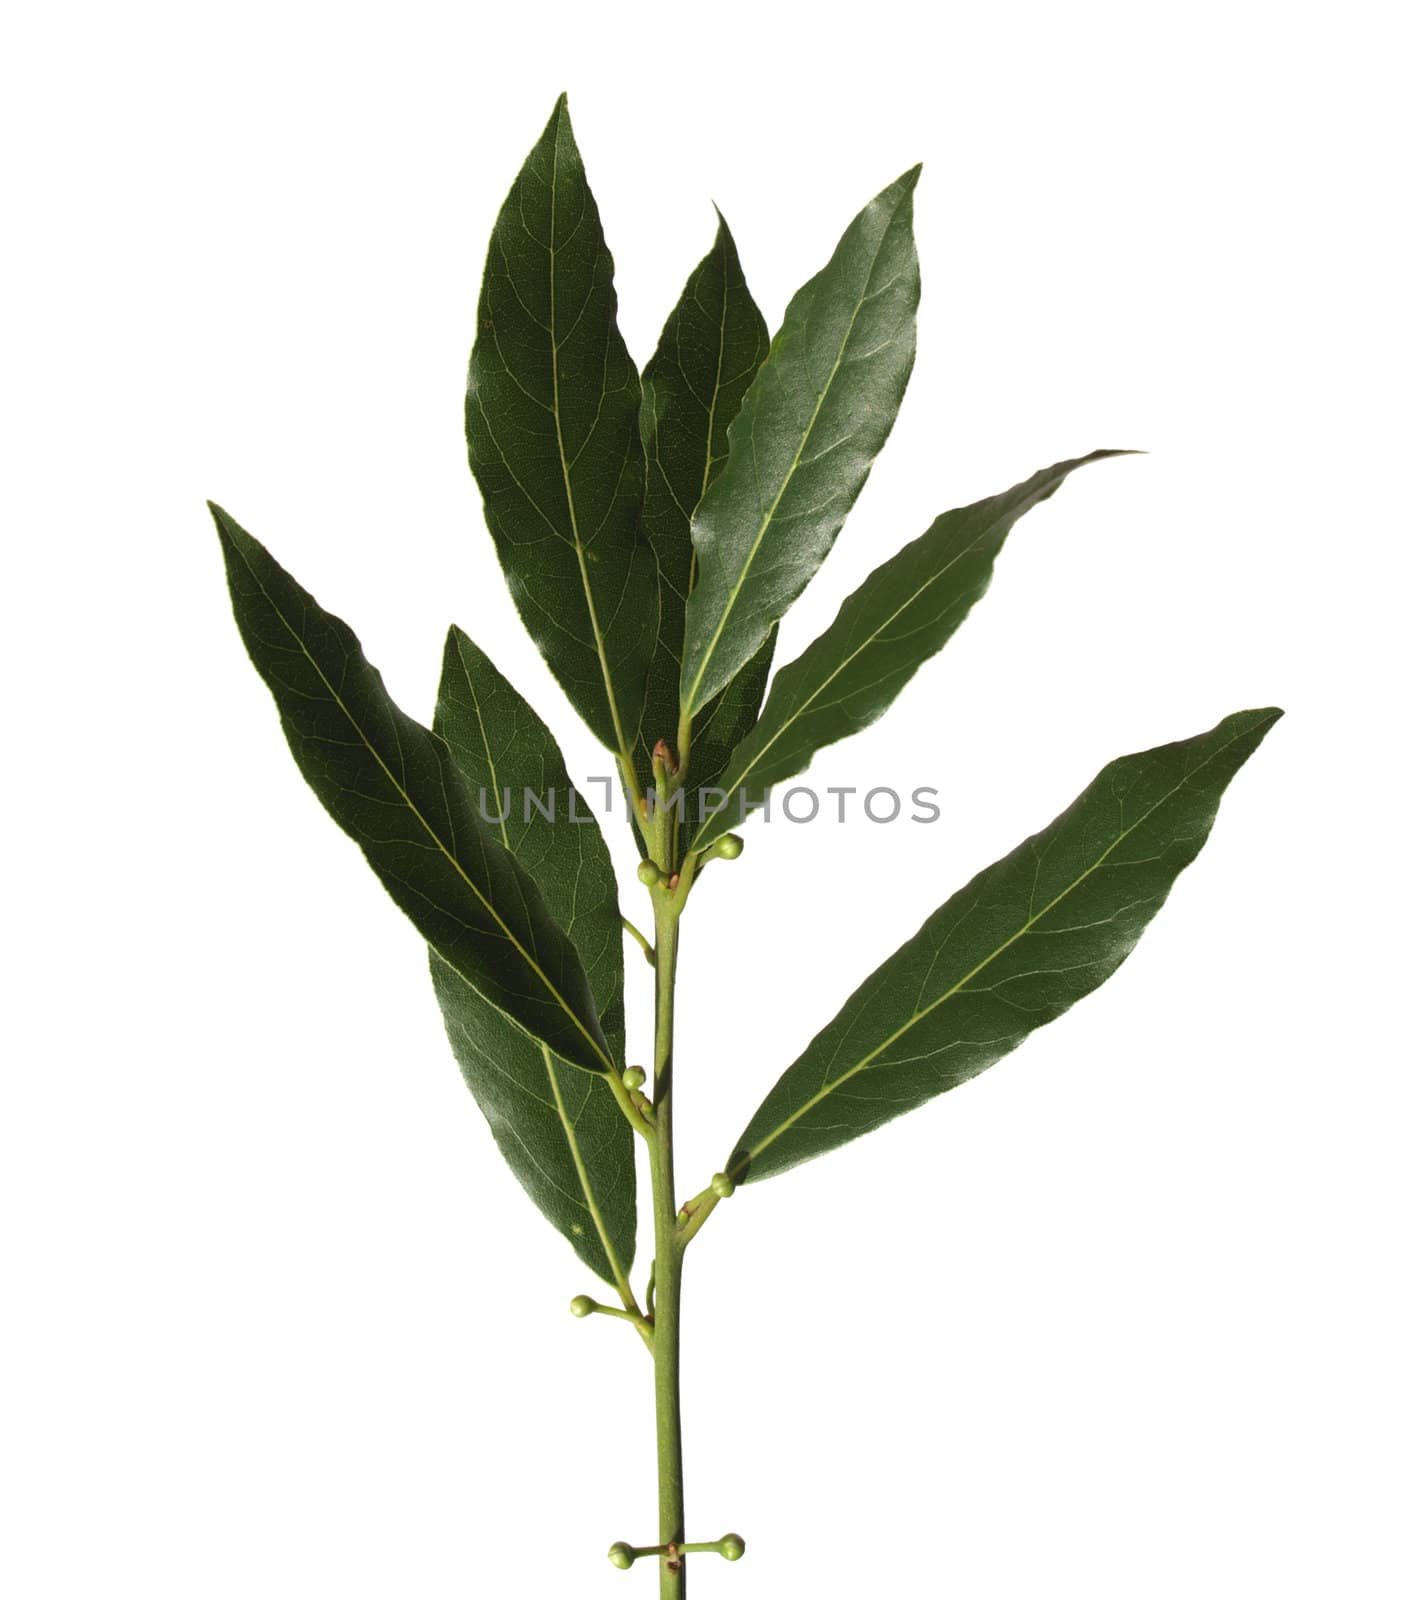 Laurus leaves isolated